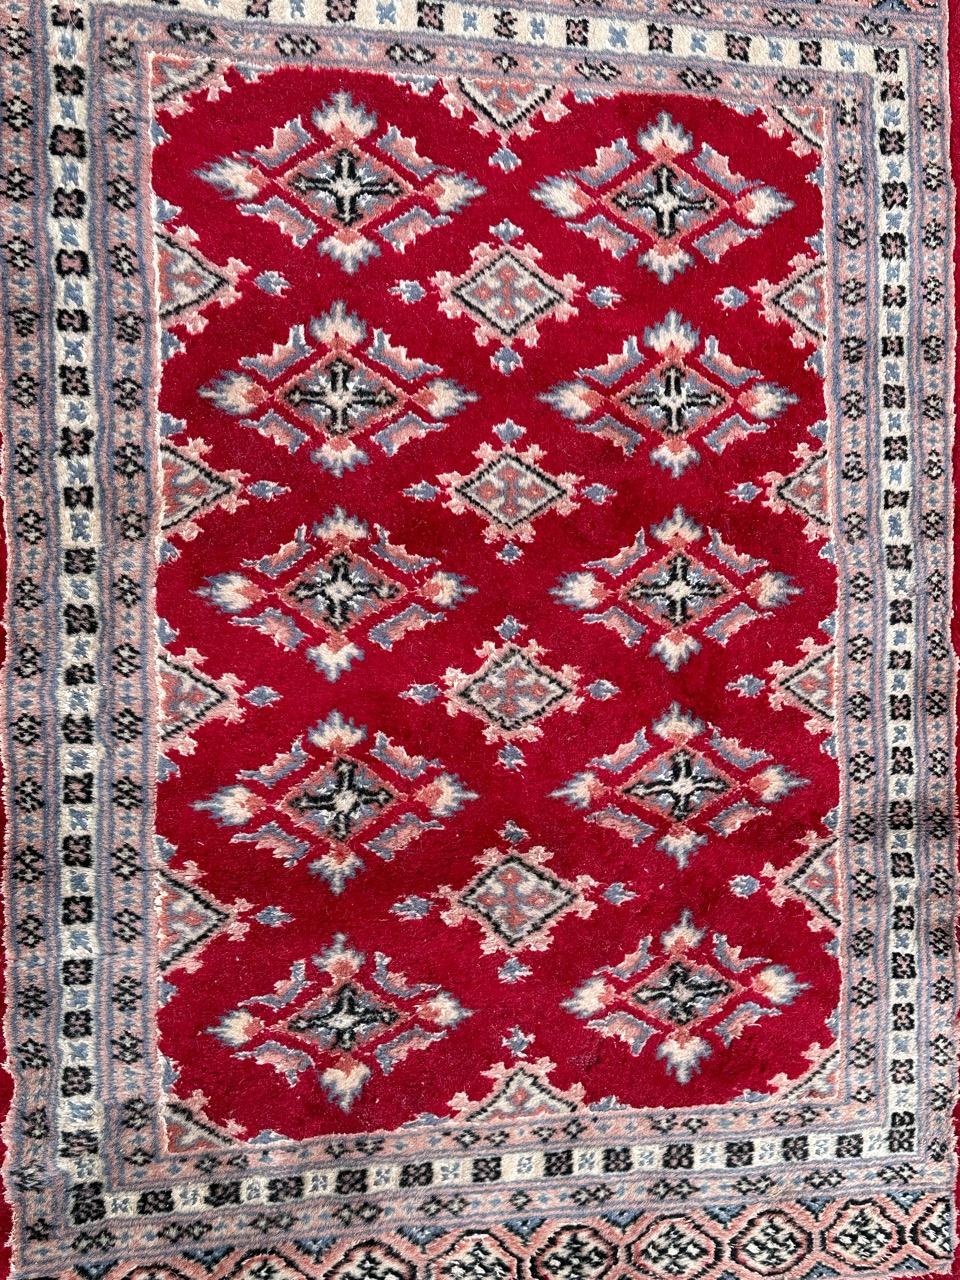 Joli petit tapis pakistanais vintage avec un joli design géométrique dans le style des tapis turkmènes, et de belles couleurs avec un champ rouge, du rose, du bleu ciel, du blanc et du noir, entièrement et finement noué à la main avec de la laine